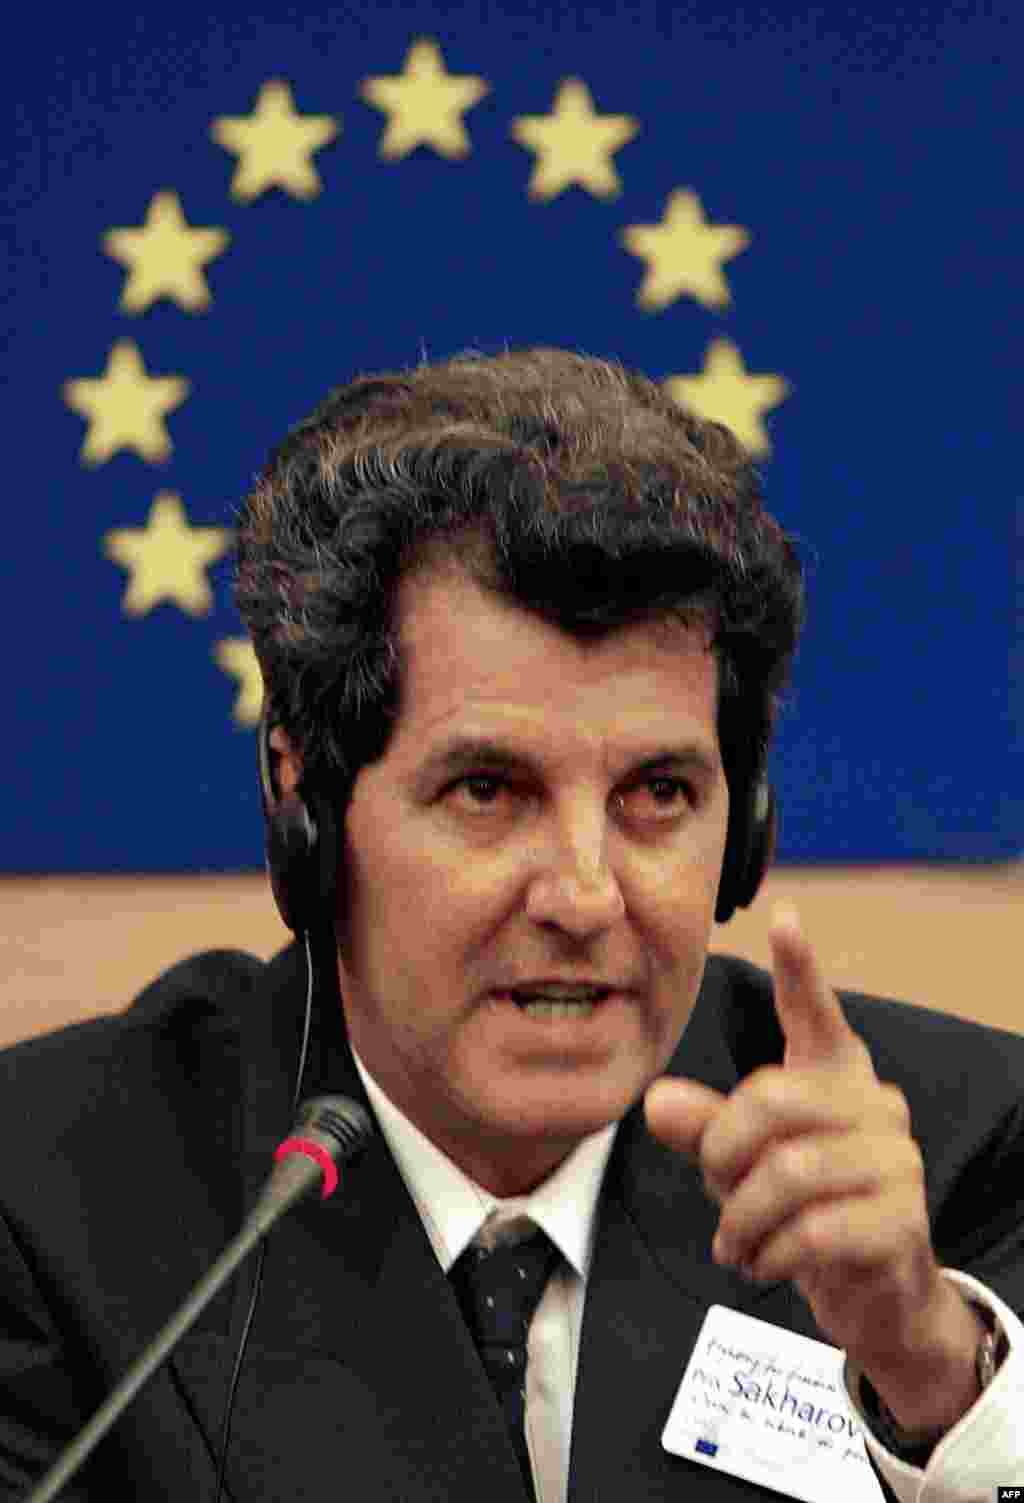 Oswaldo Payá responde a las preguntas de los periodistas tras recibir el Premio Sájarov a la Libertad de Expresión del Parlamento Europeo, el 17 de diciembre de 2002, en Estrasburgo.